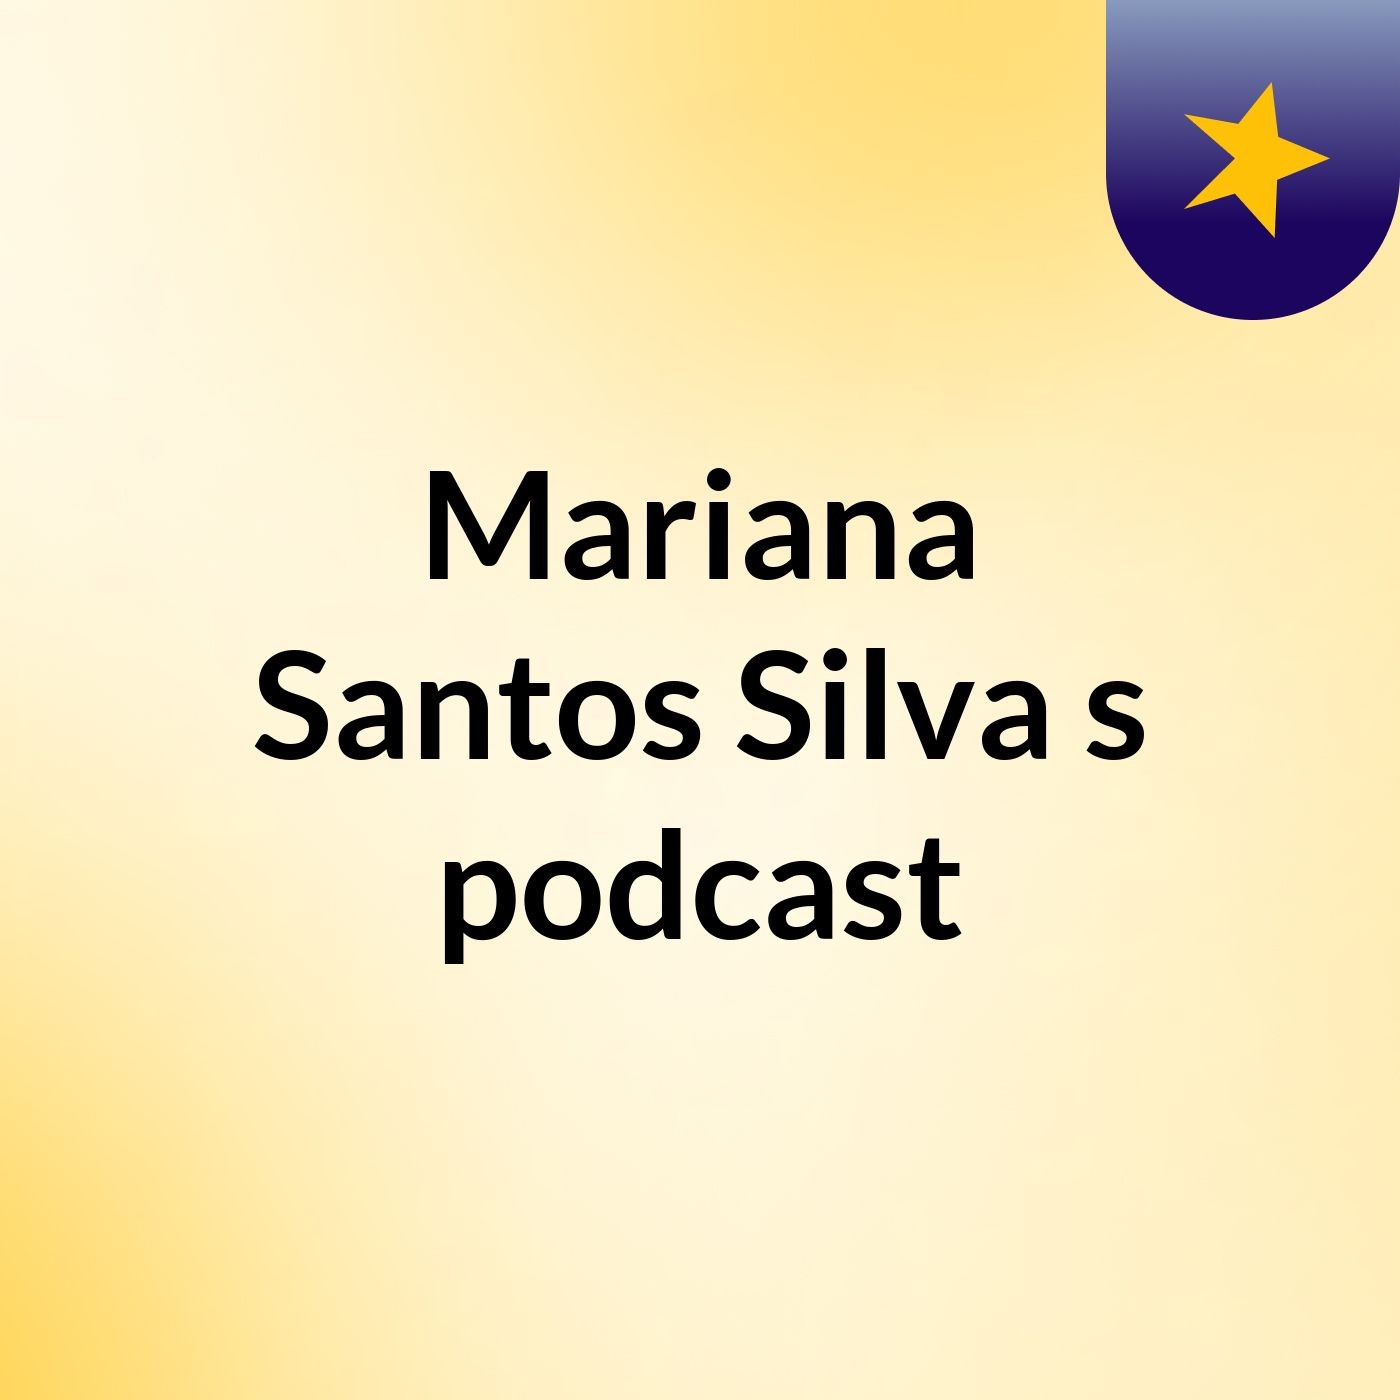 Mariana Santos Silva's podcast